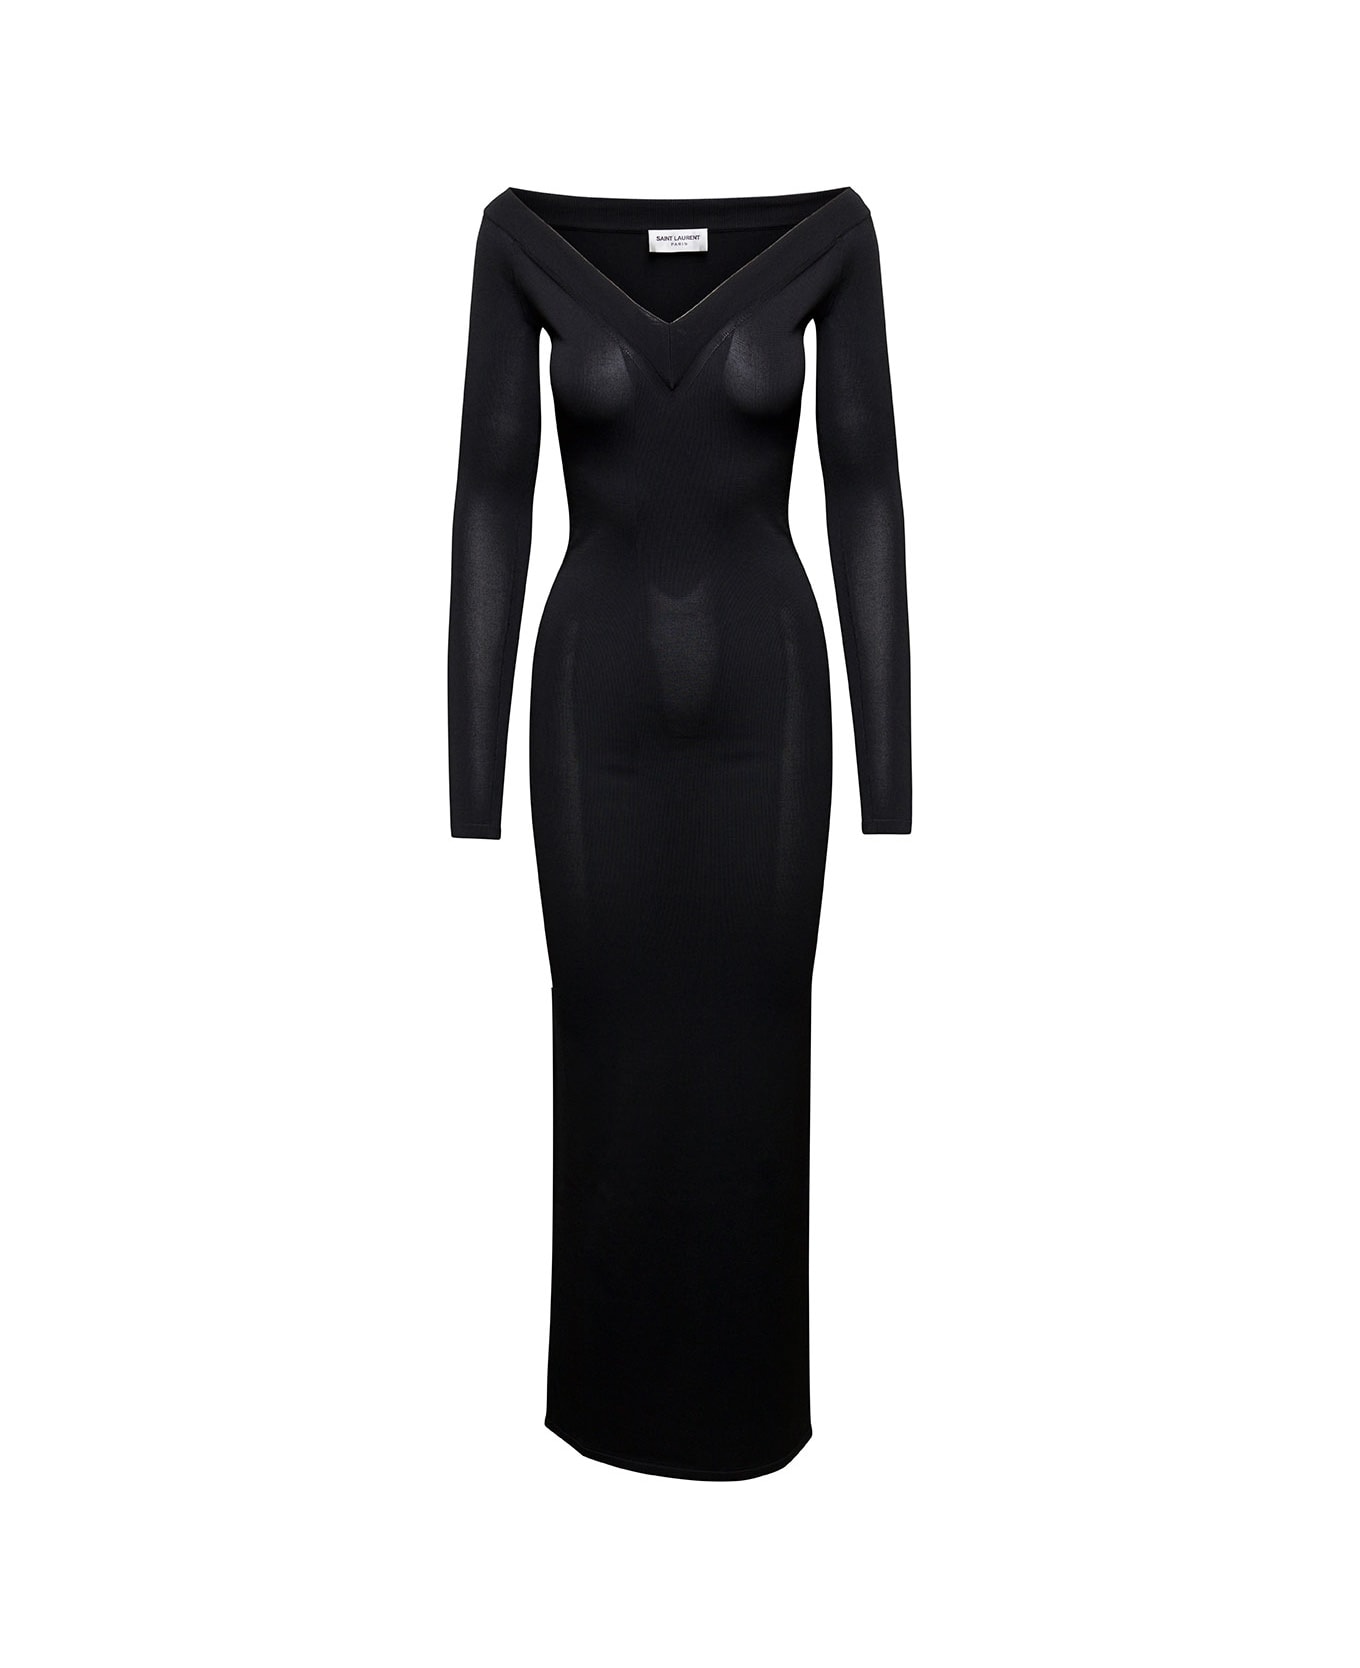 Saint Laurent Off-shoulder V-neck Long Dress In Black Viscose Woman - Black